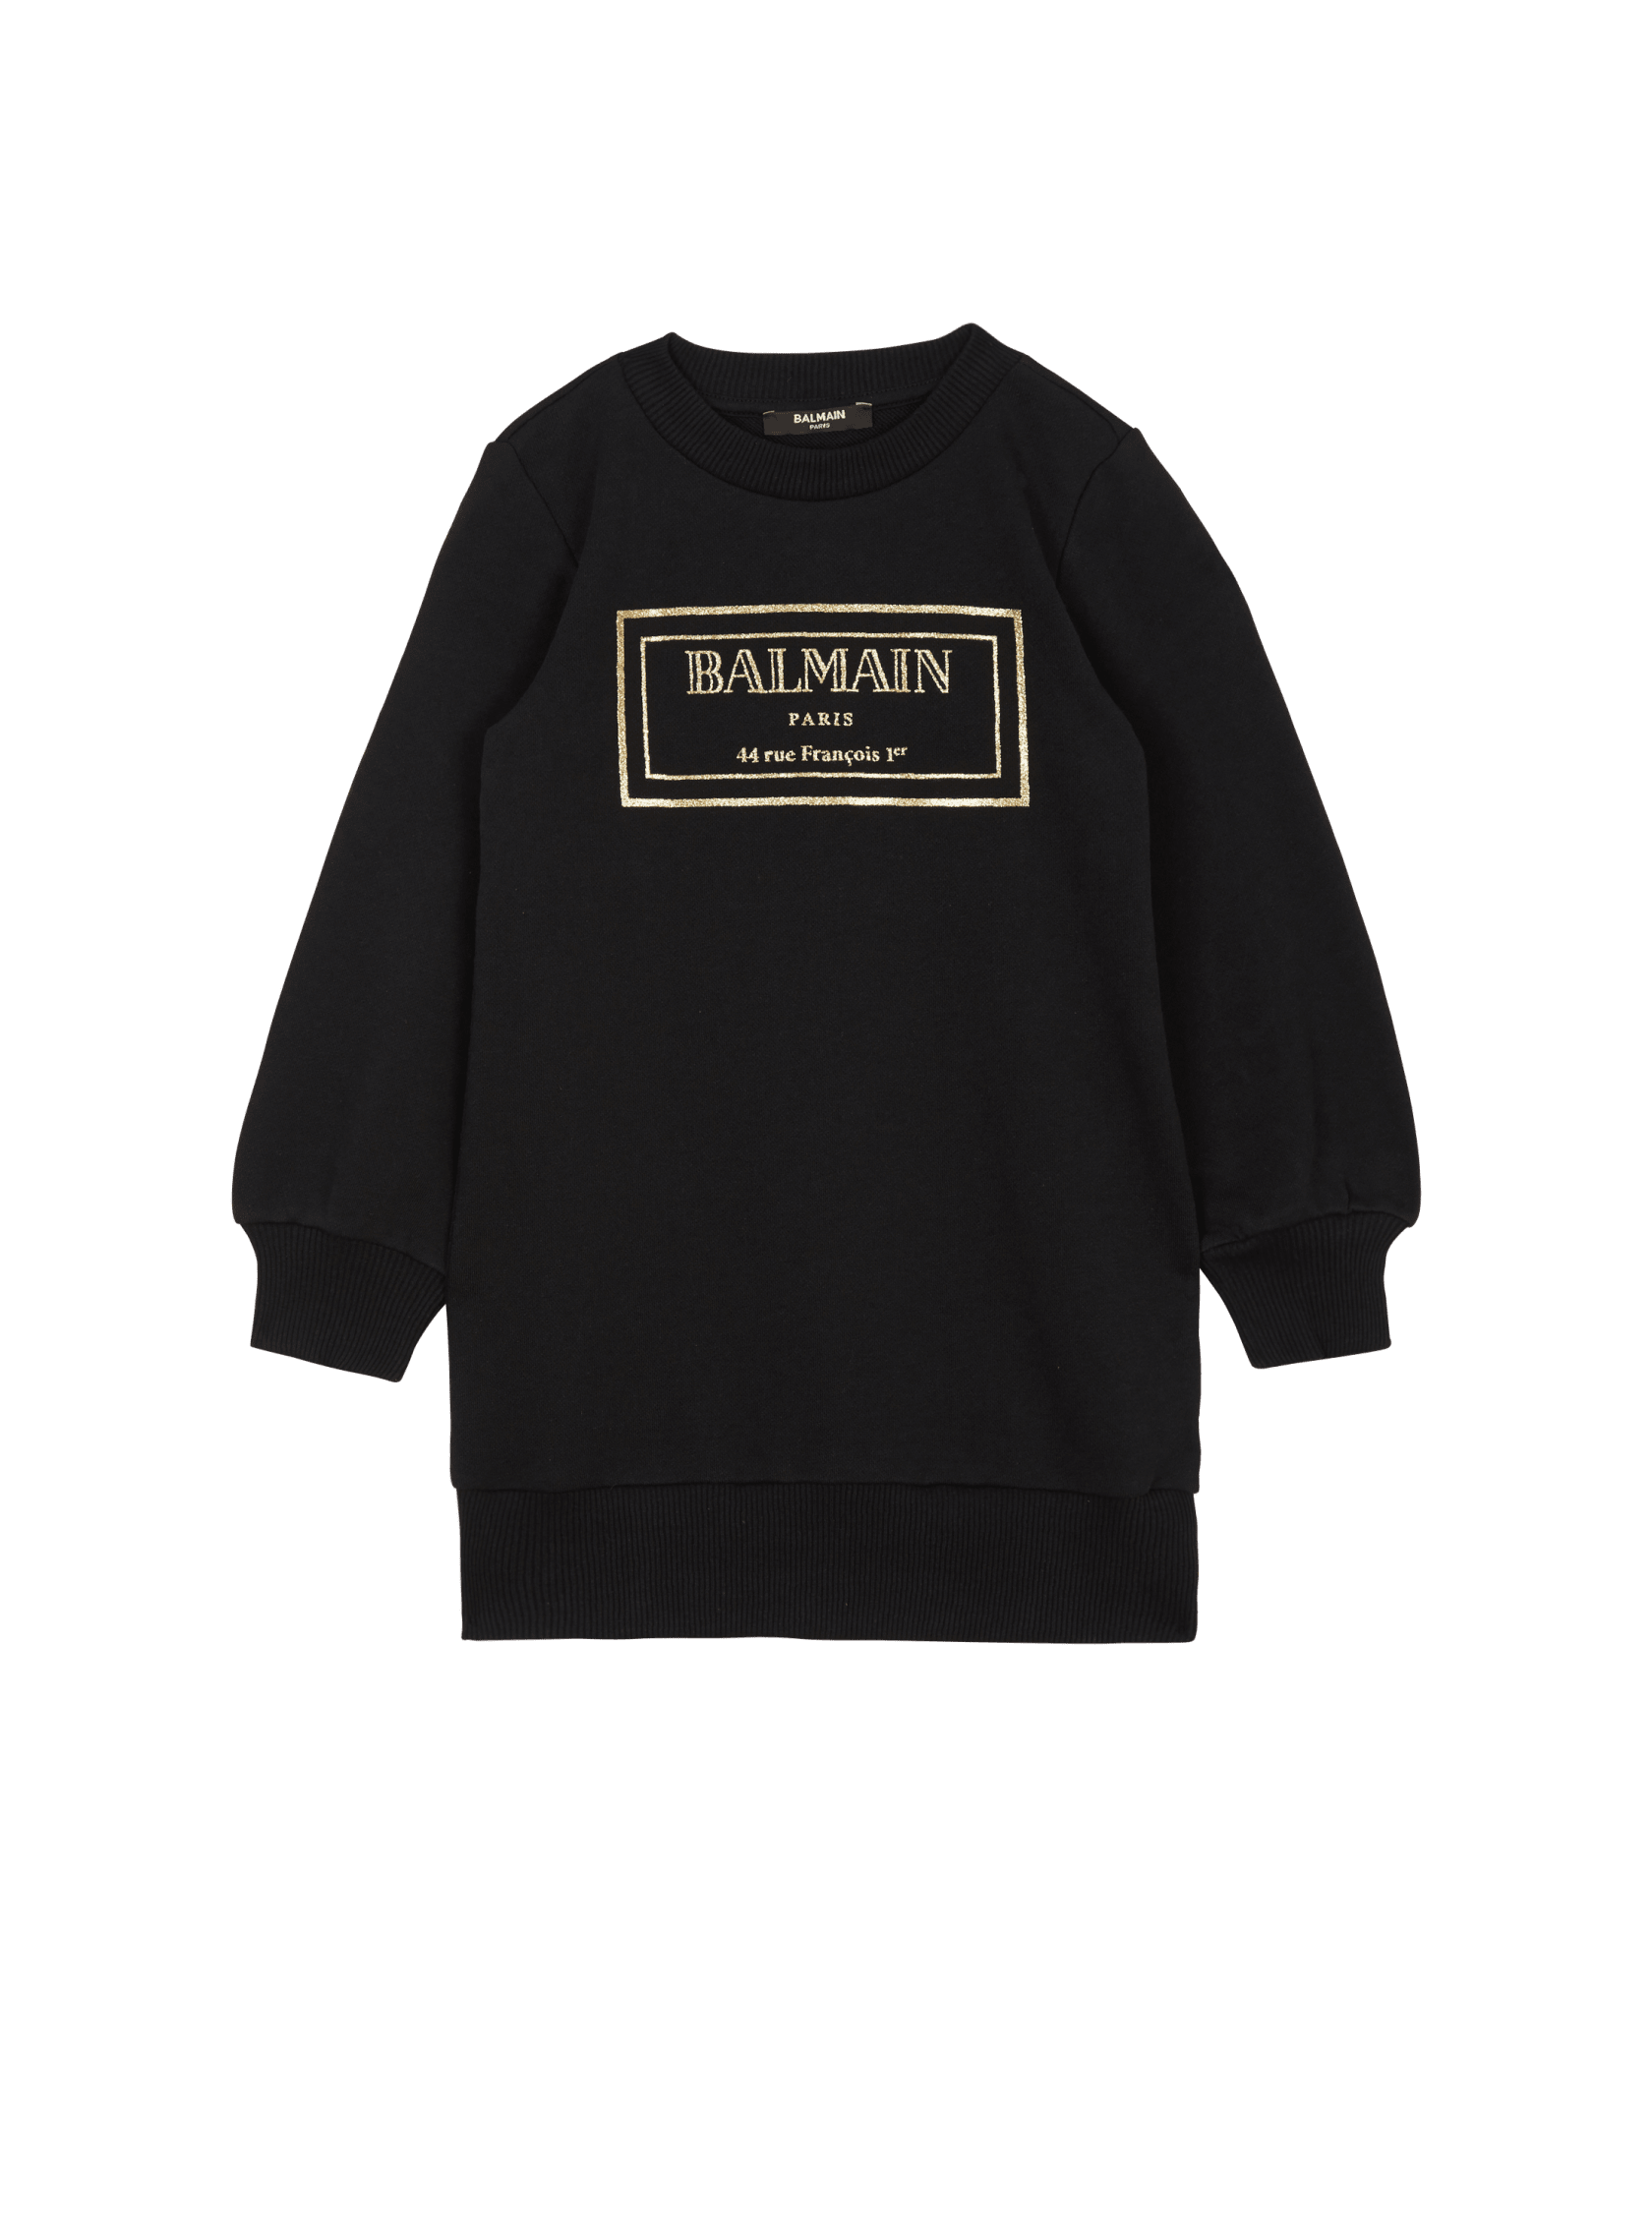 balmain.com | Balmain Paris sweatshirt dress